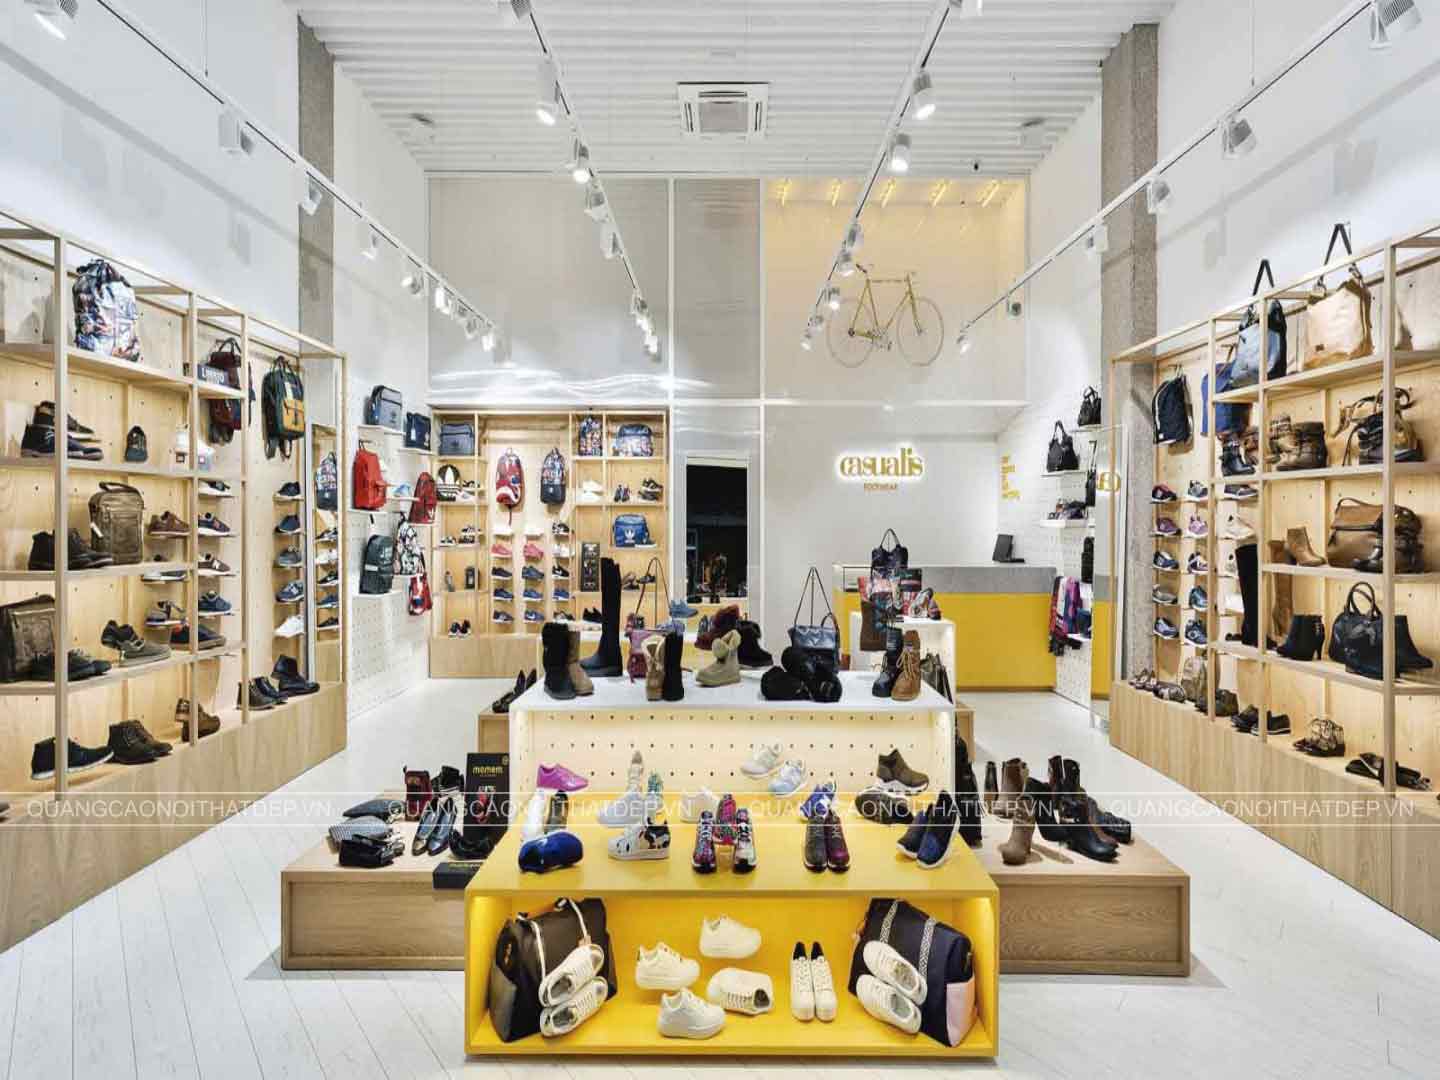 Thiết kế cửa hàng giày dép túi xách đẹp là một trong những yếu tố quan trọng để thu hút khách hàng và tạo ra doanh thu cao. Với sự hỗ trợ của quảng cáo nội thất đẹp, cửa hàng giày dép của bạn sẽ được trang trí đẹp mắt, sang trọng và chuyên nghiệp.